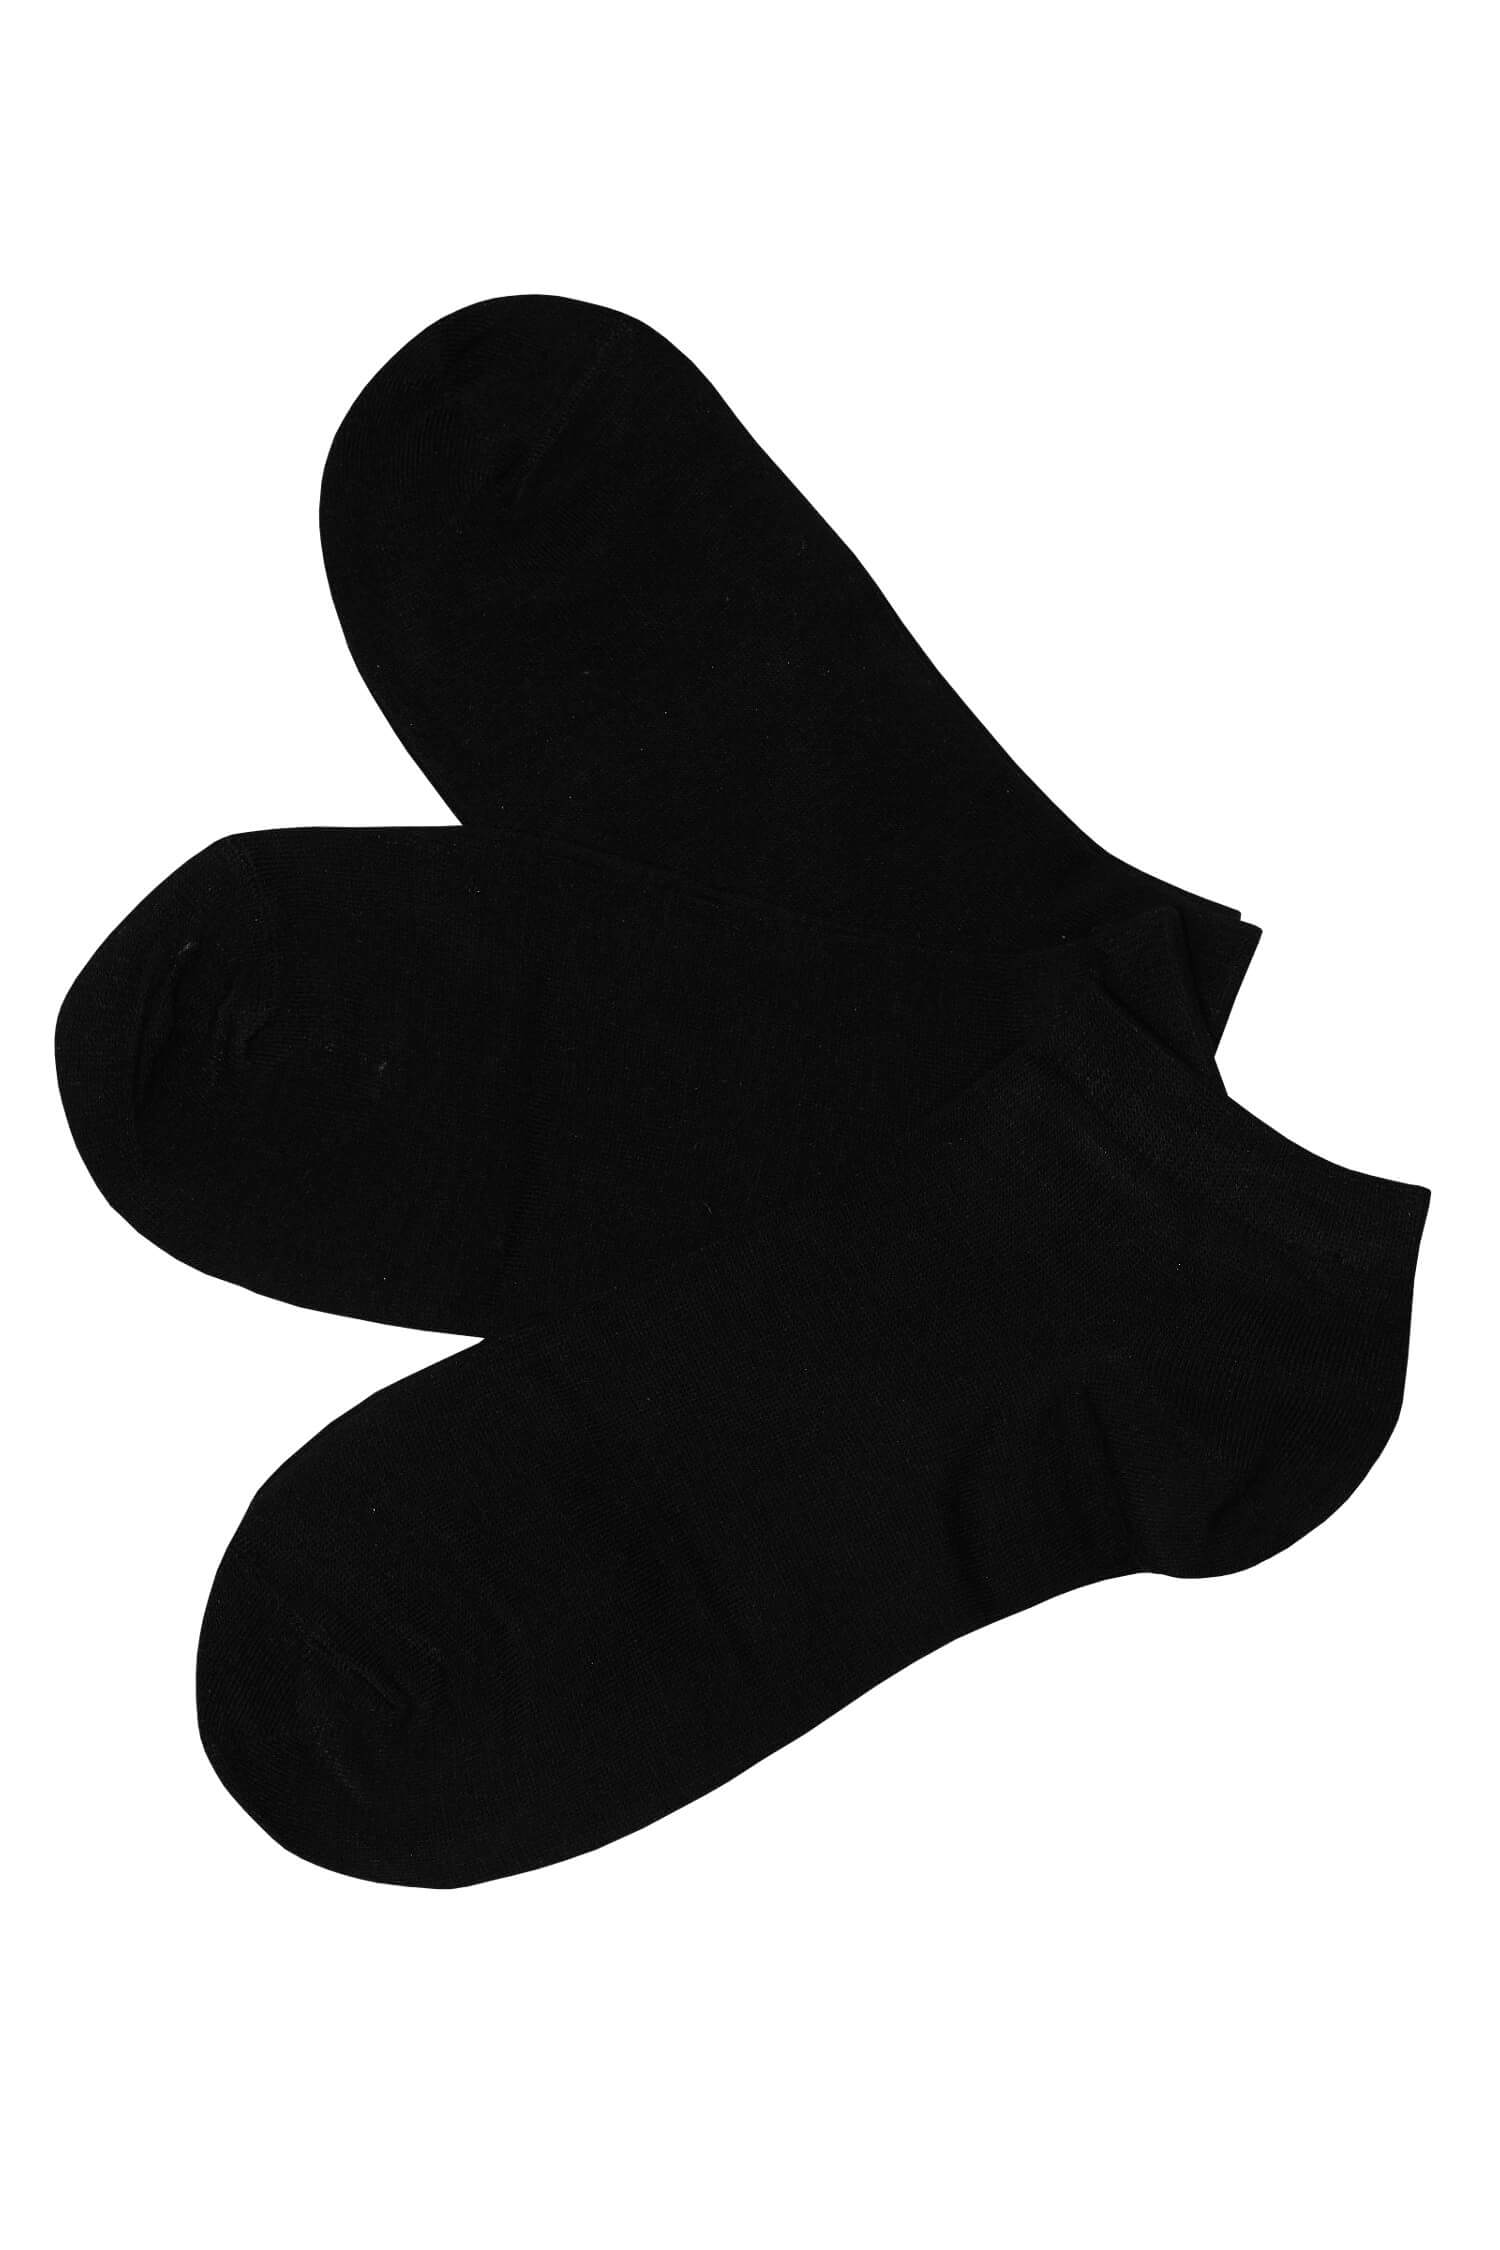 Dámské kotníčkové ponožky bambus CW600 - 3bal 35-38 černá